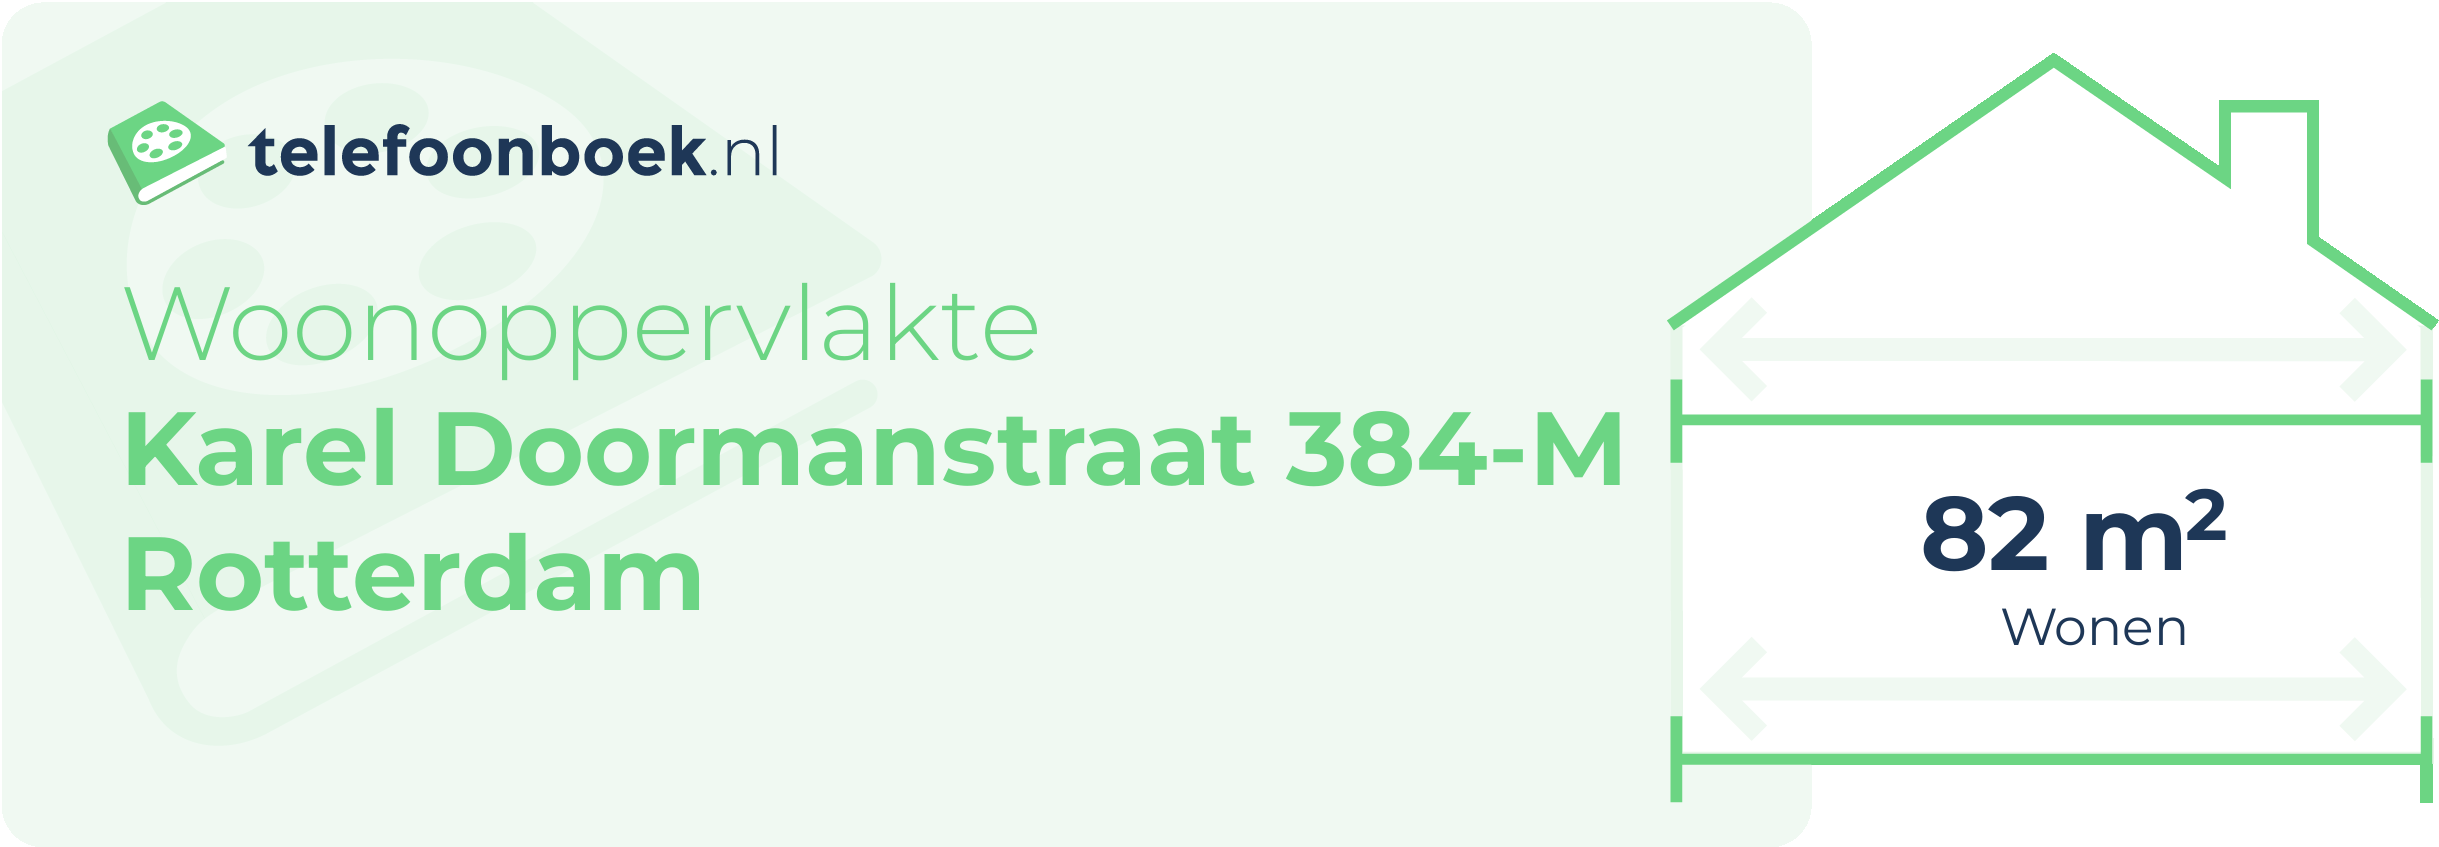 Woonoppervlakte Karel Doormanstraat 384-M Rotterdam